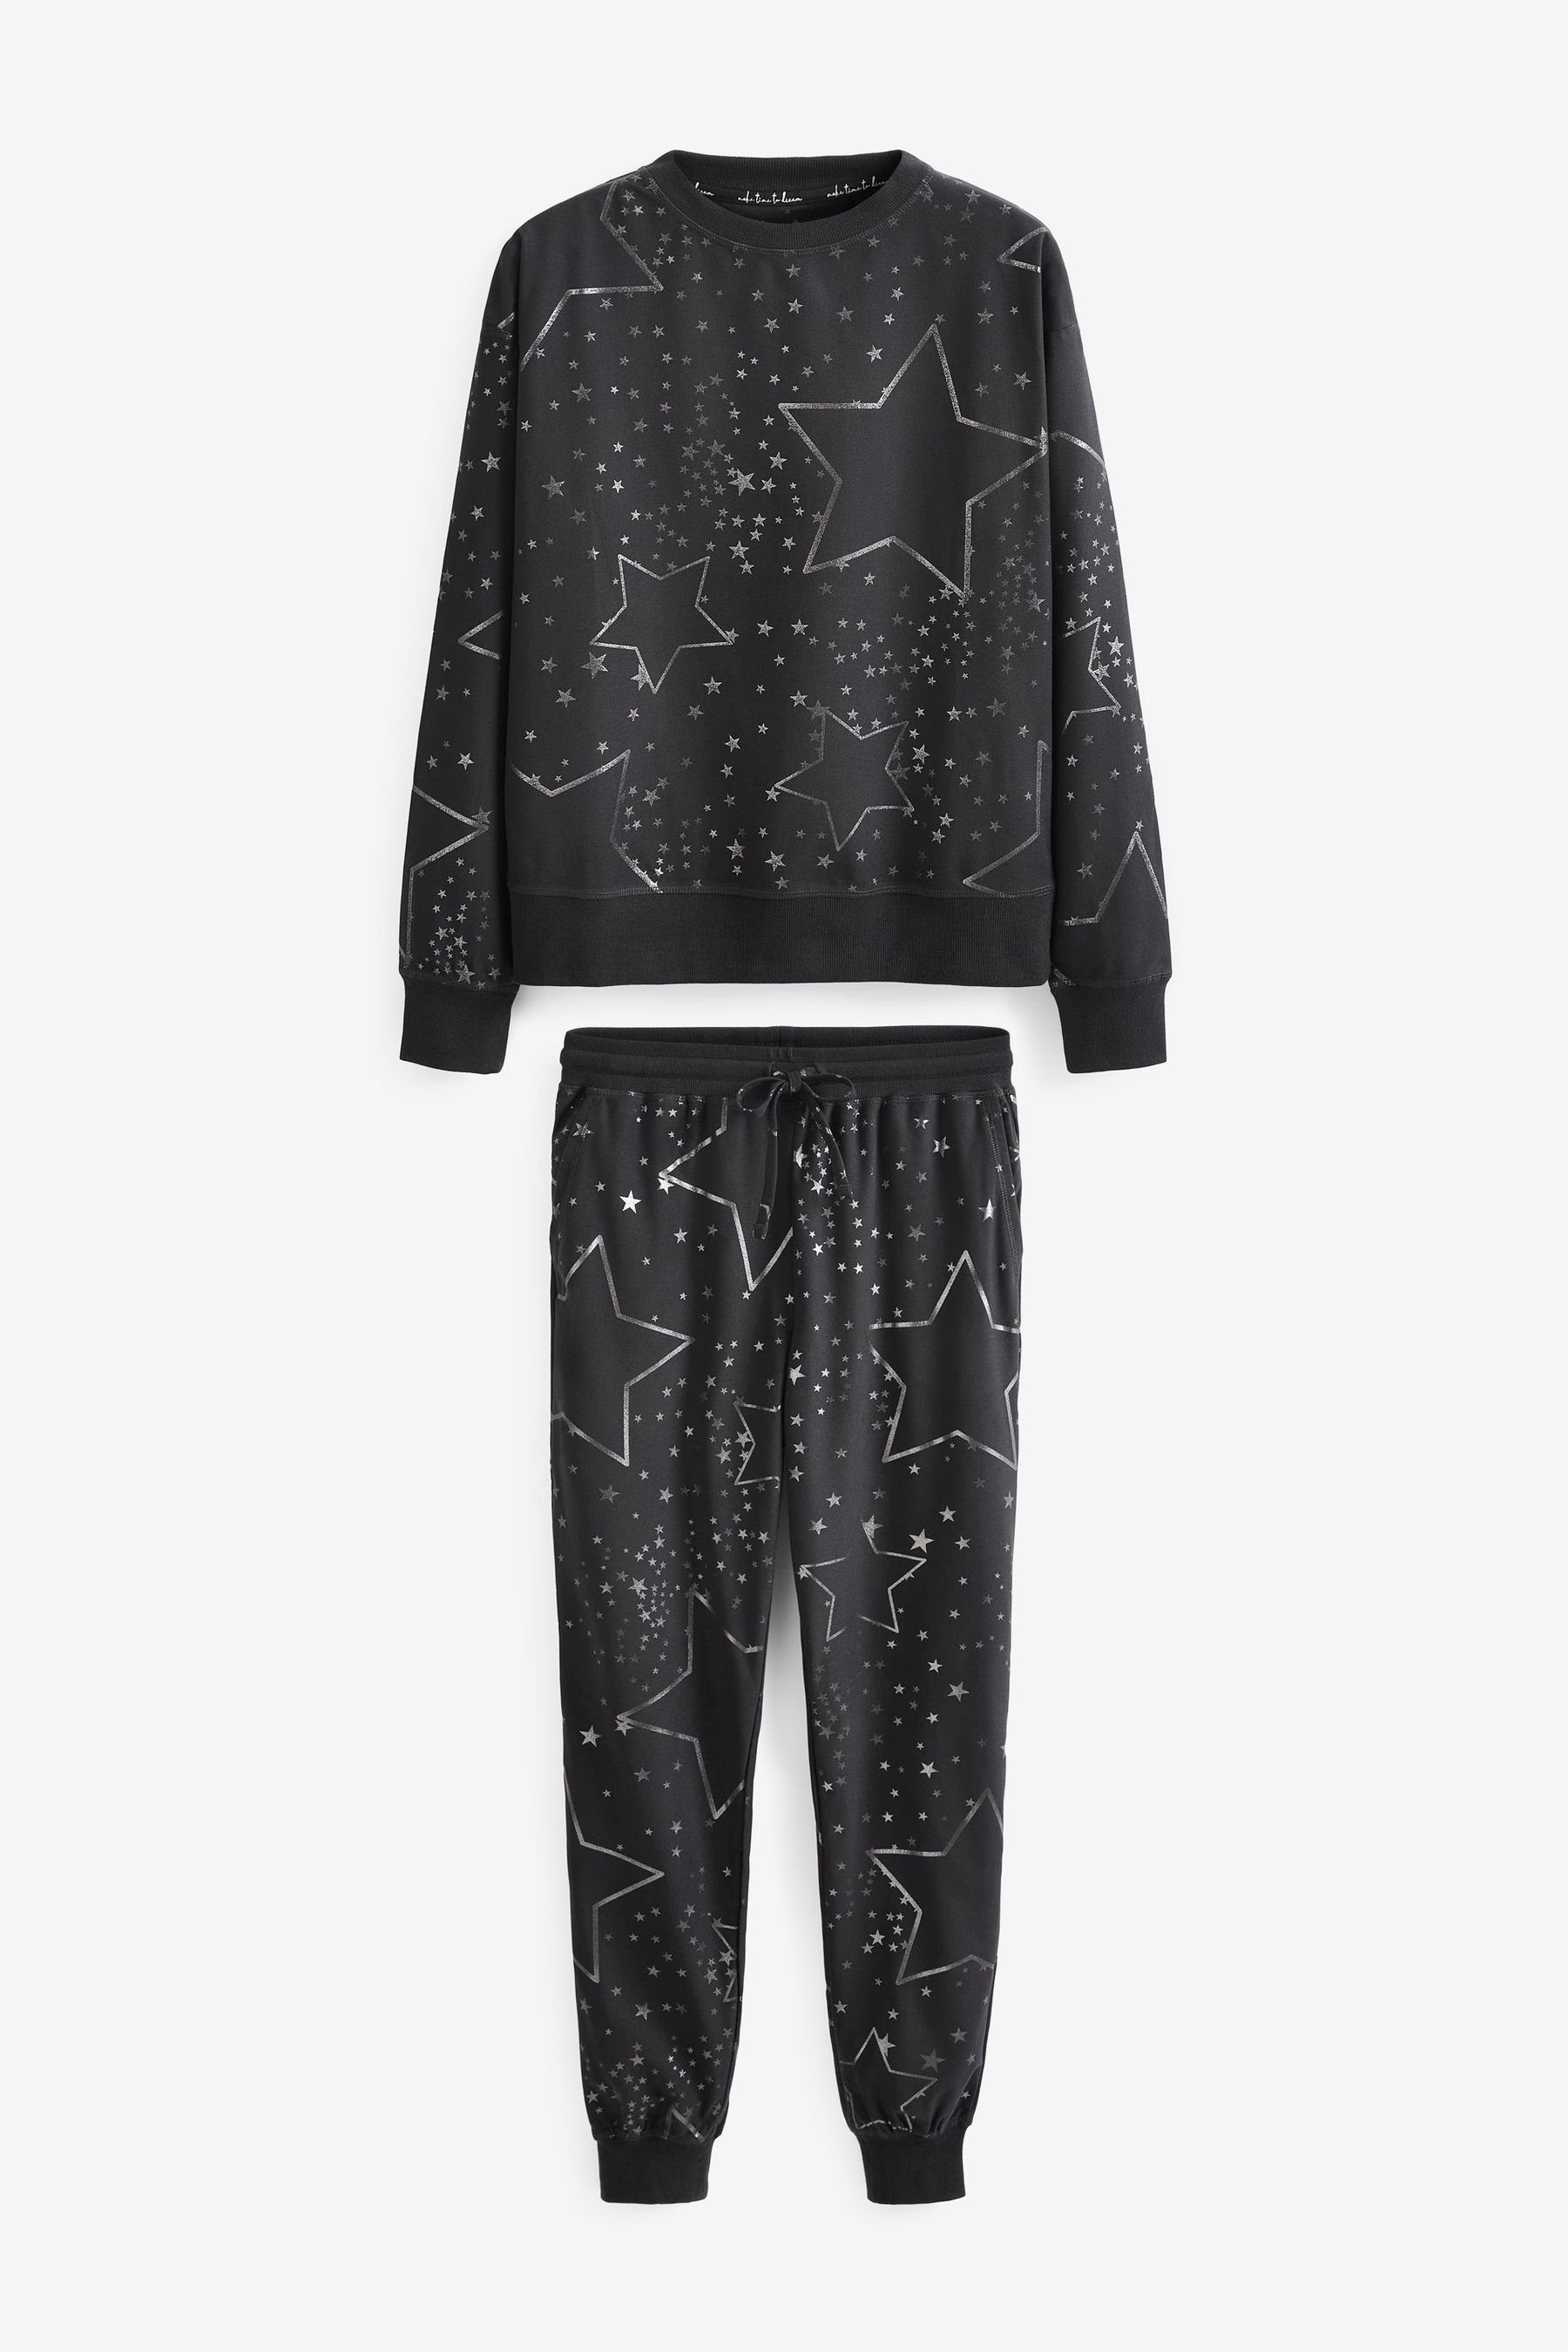 Next Pyjama Bequemer und superweicher Pyjama (2 tlg) Charcoal Star Foil